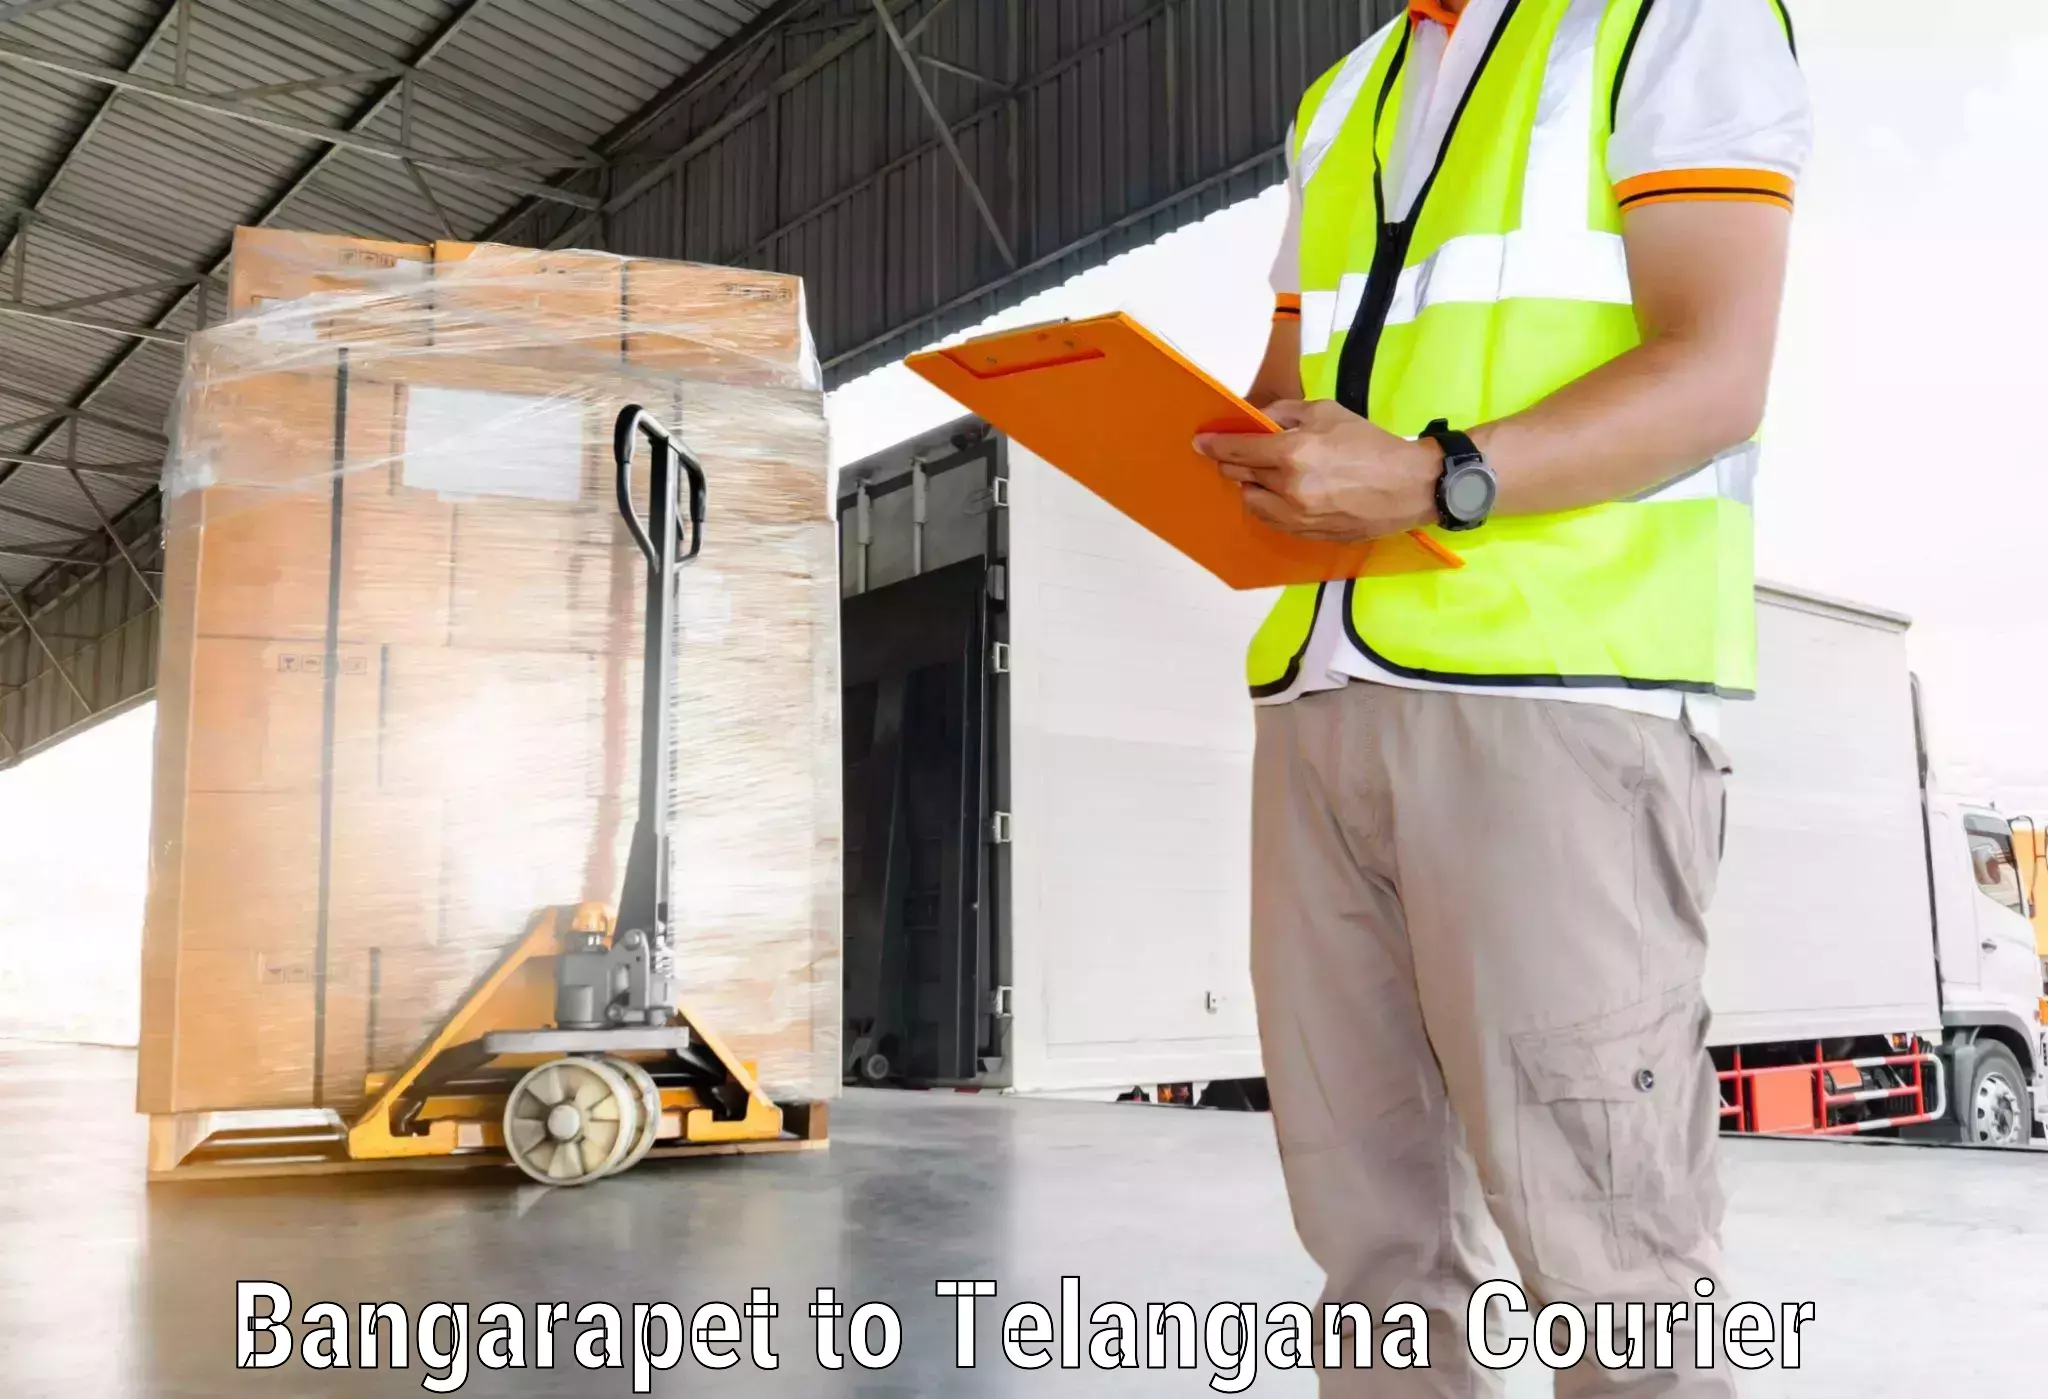 Modern courier technology Bangarapet to Yellandu